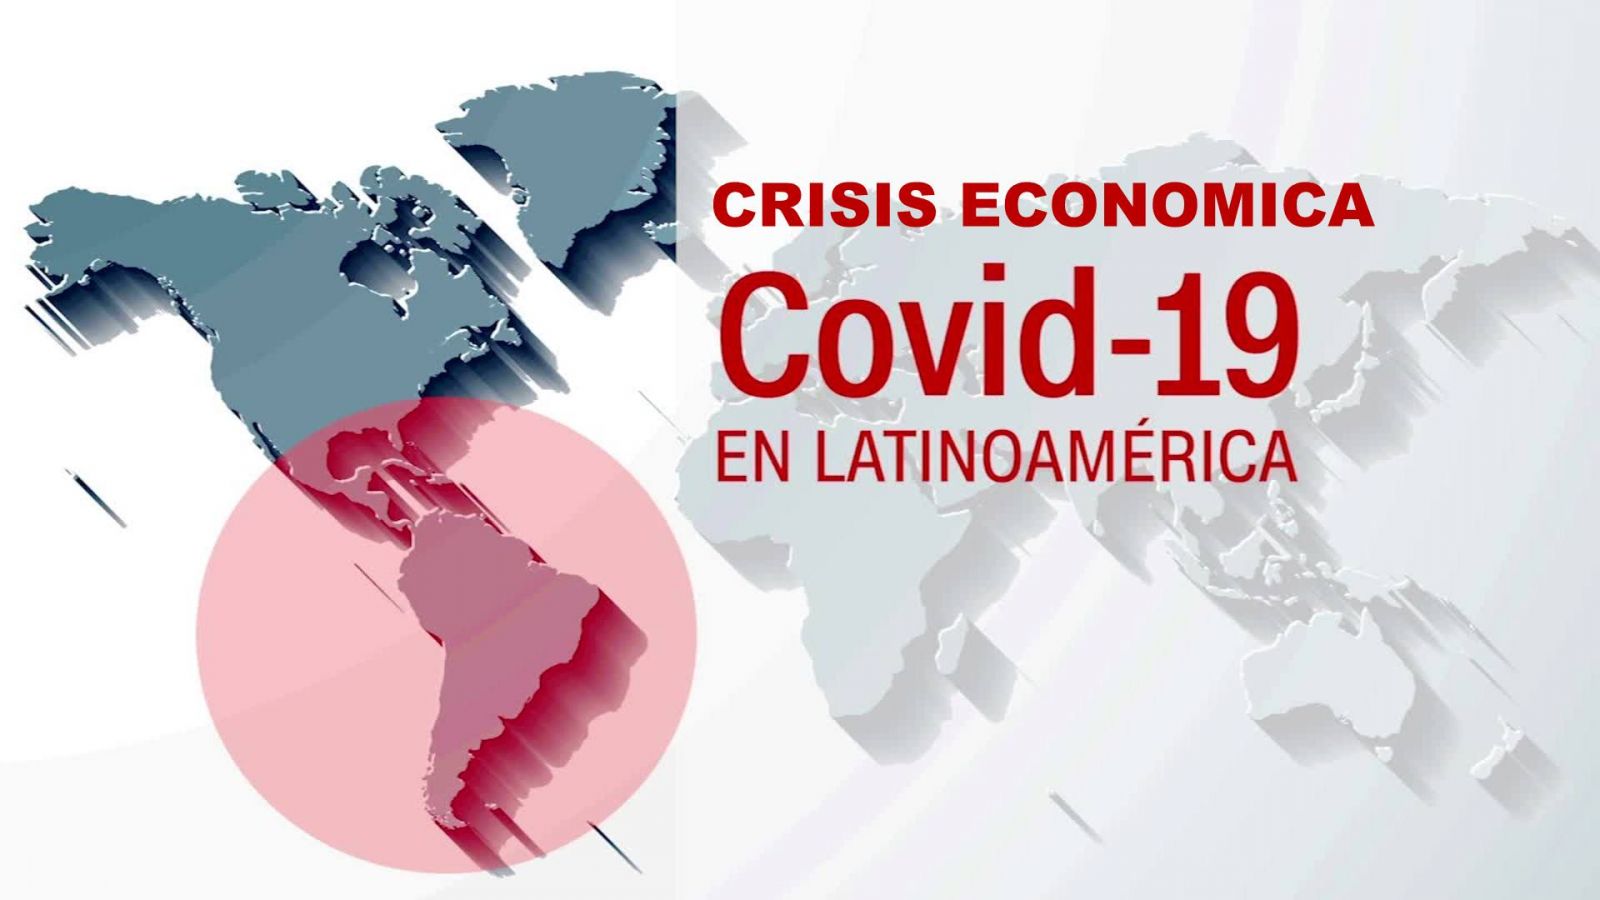 Los países latinoamericanos que sufrirán la más profunda caída económica por la pandemia